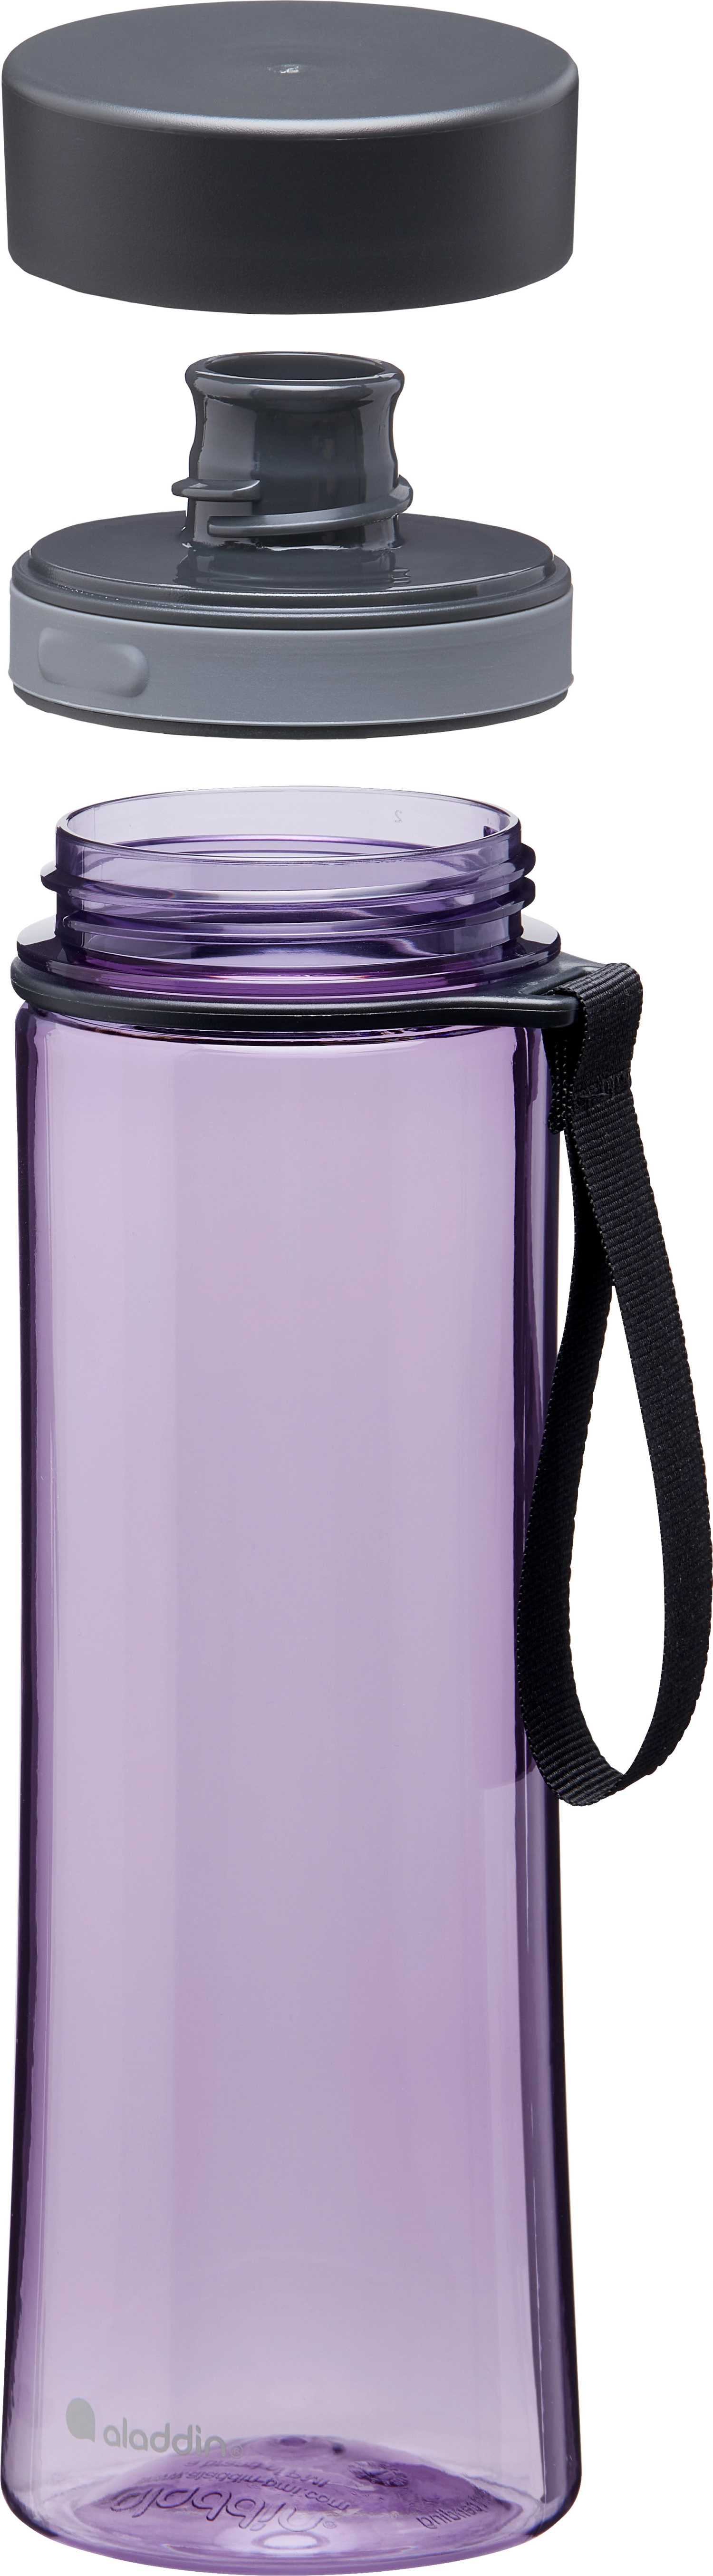 Aladdin aveo water bottle 0.6l violet purple